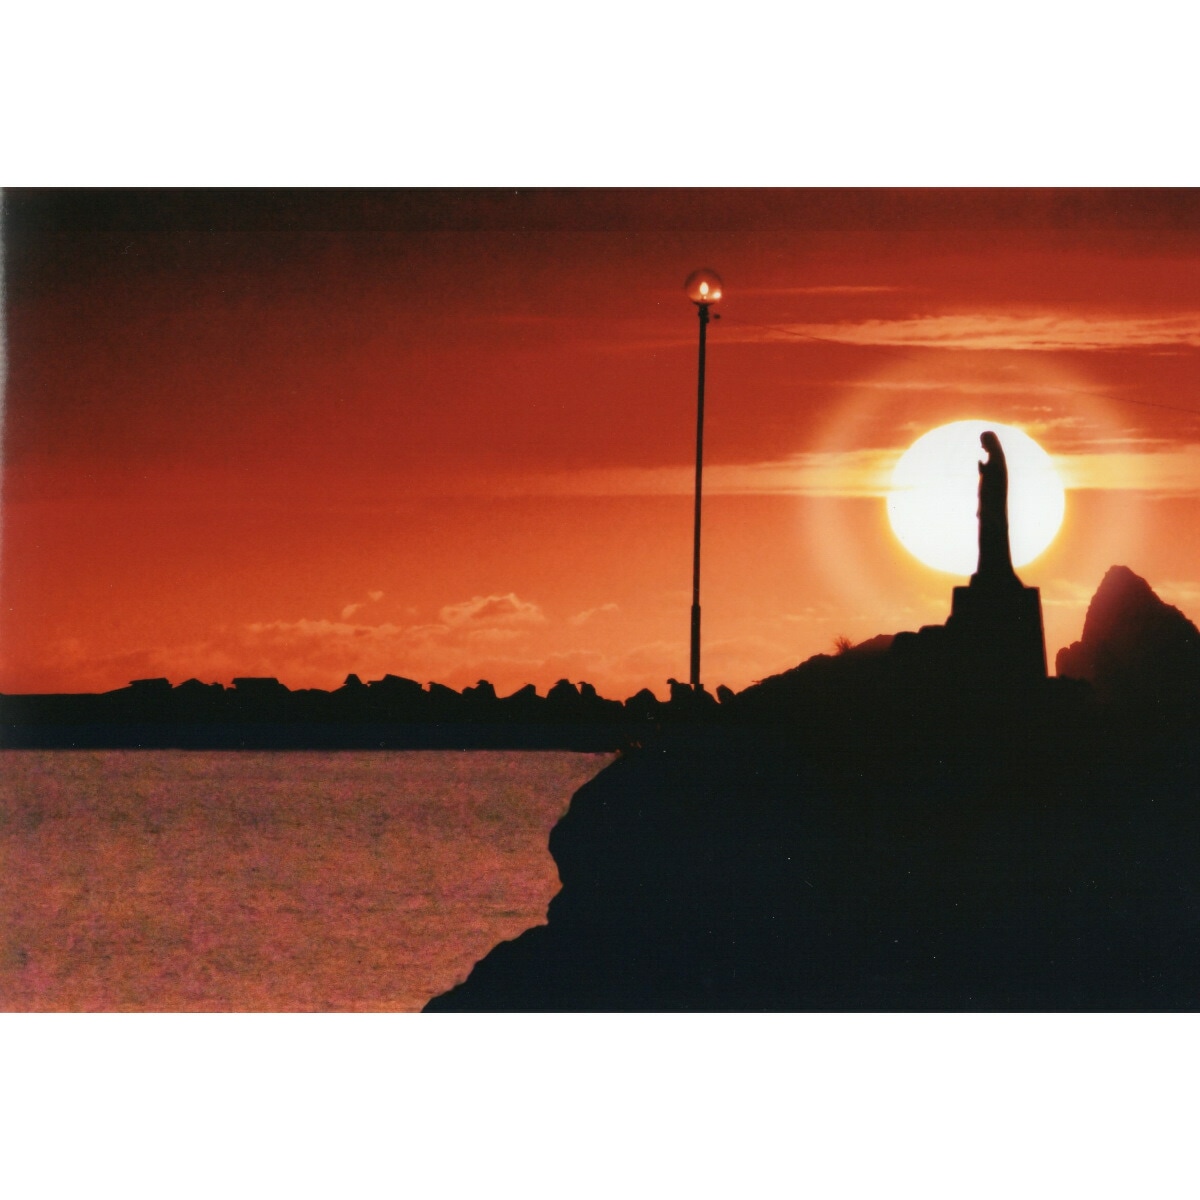 奇跡の写真 夕陽のマリア像 : ホビー・コスプレ 秋元隆良 高品質安い